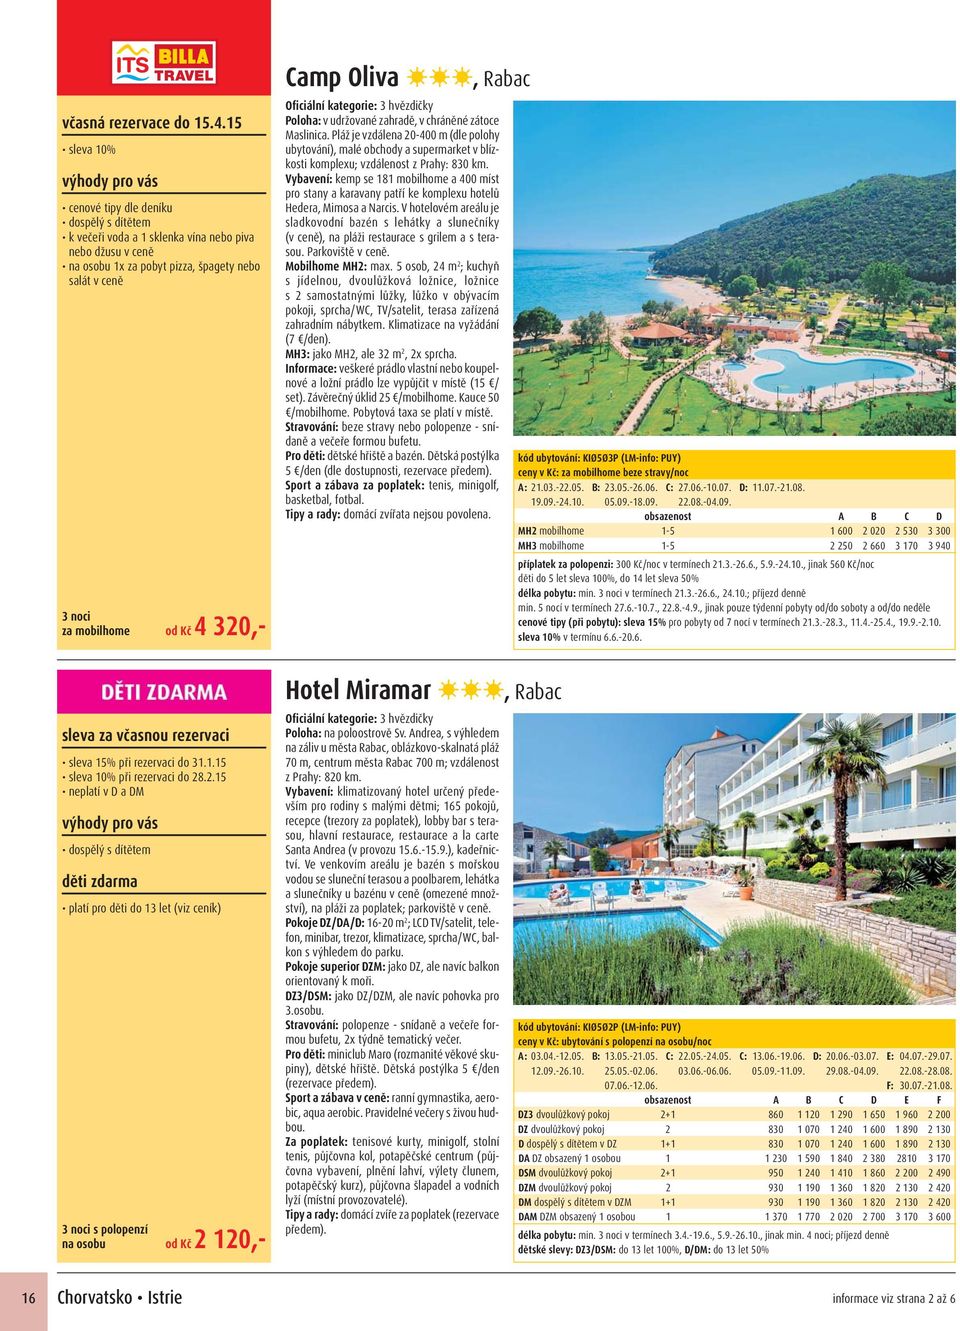 V hotelovém areálu je sladkovodní bazén s lehátky a slunečníky (v ceně), na pláži restaurace s grilem a s terasou. Parkoviště v ceně. Mobilhome MH2: max.